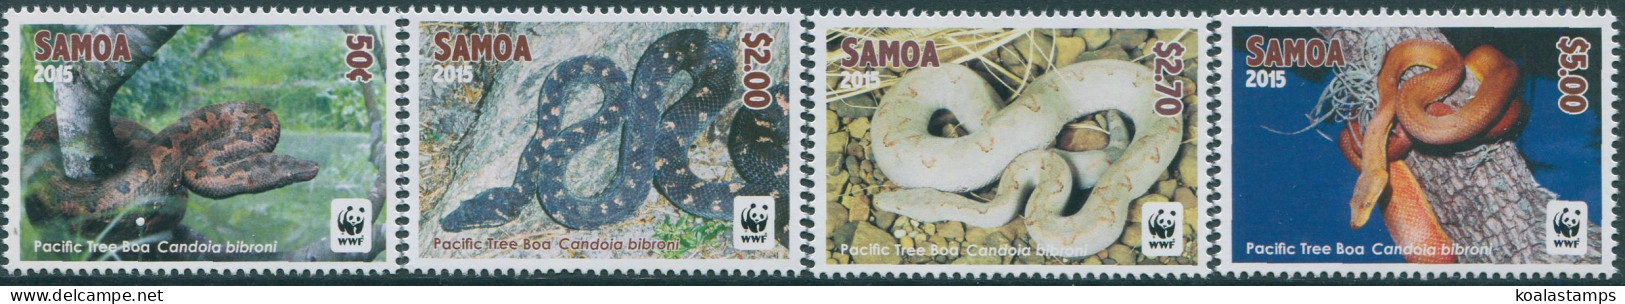 Samoa 2015 SG1321-1324 WWF Tree Boa White Edges Set MNH - Samoa